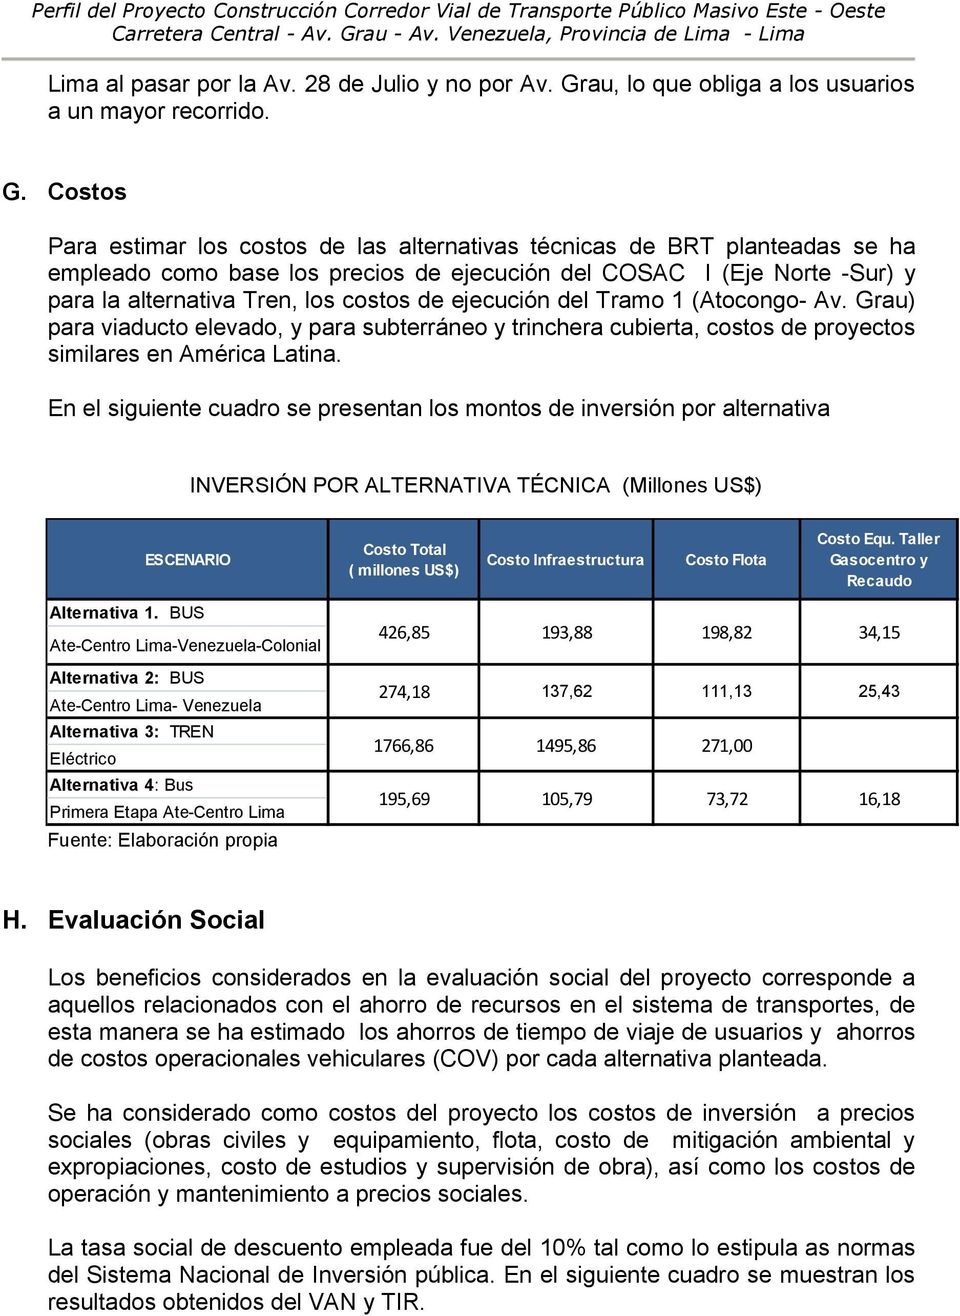 Costos Para estimar los costos de las alternativas técnicas de BRT planteadas se ha empleado como base los precios de ejecución del COSAC I (Eje Norte -Sur) y para la alternativa Tren, los costos de